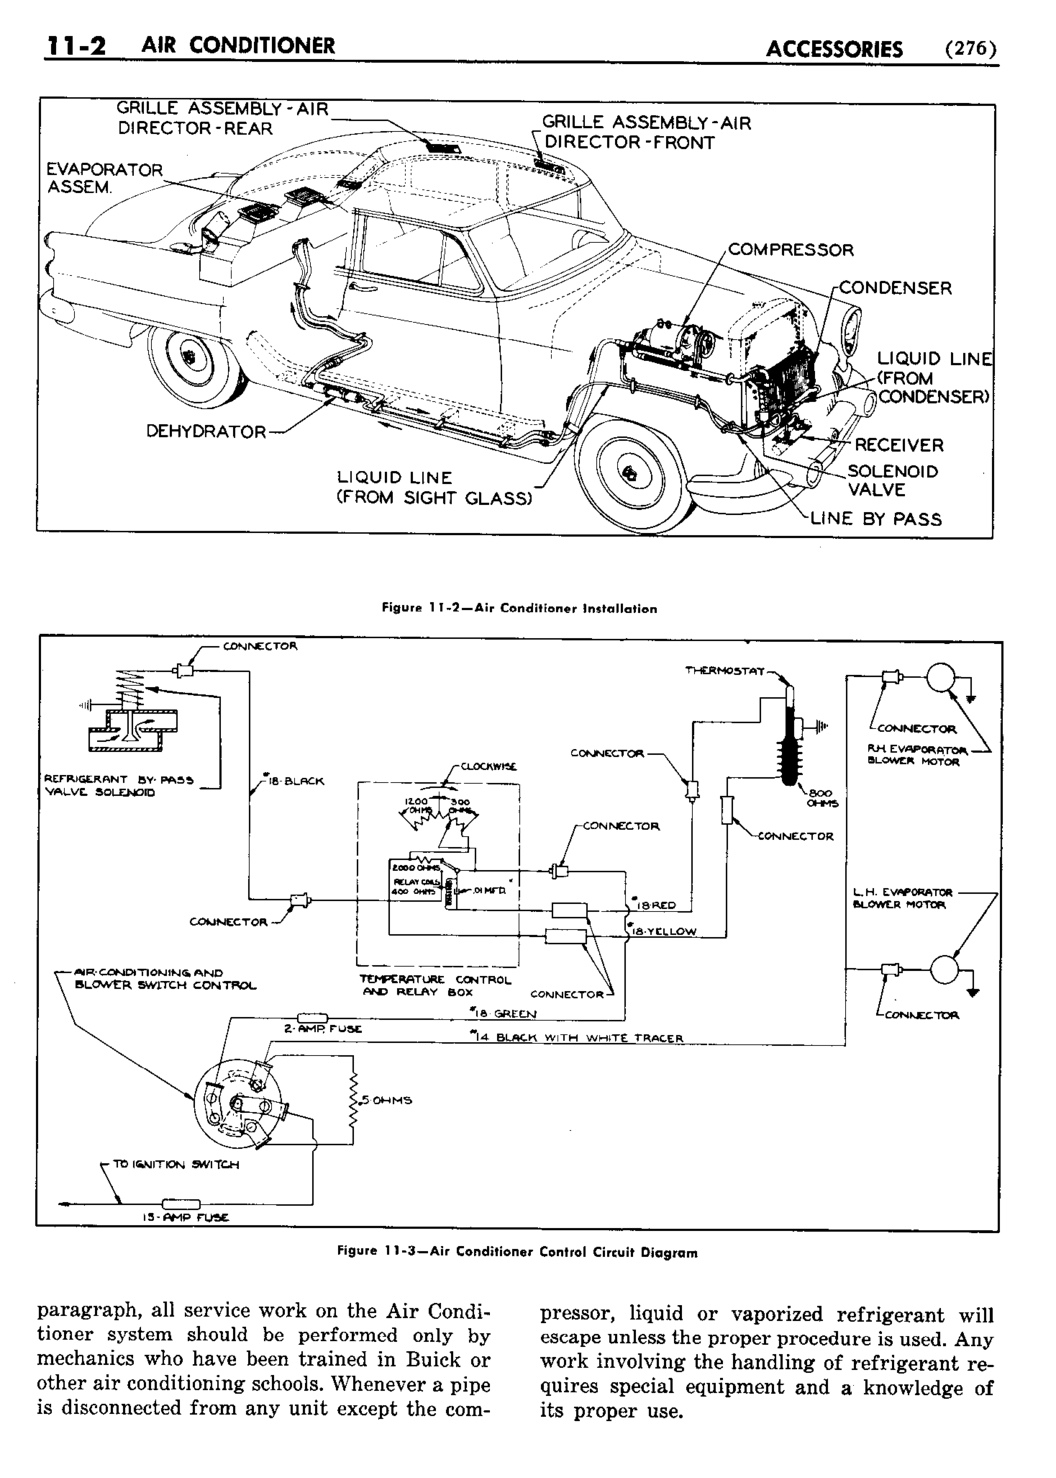 n_12 1953 Buick Shop Manual - Accessories-002-002.jpg